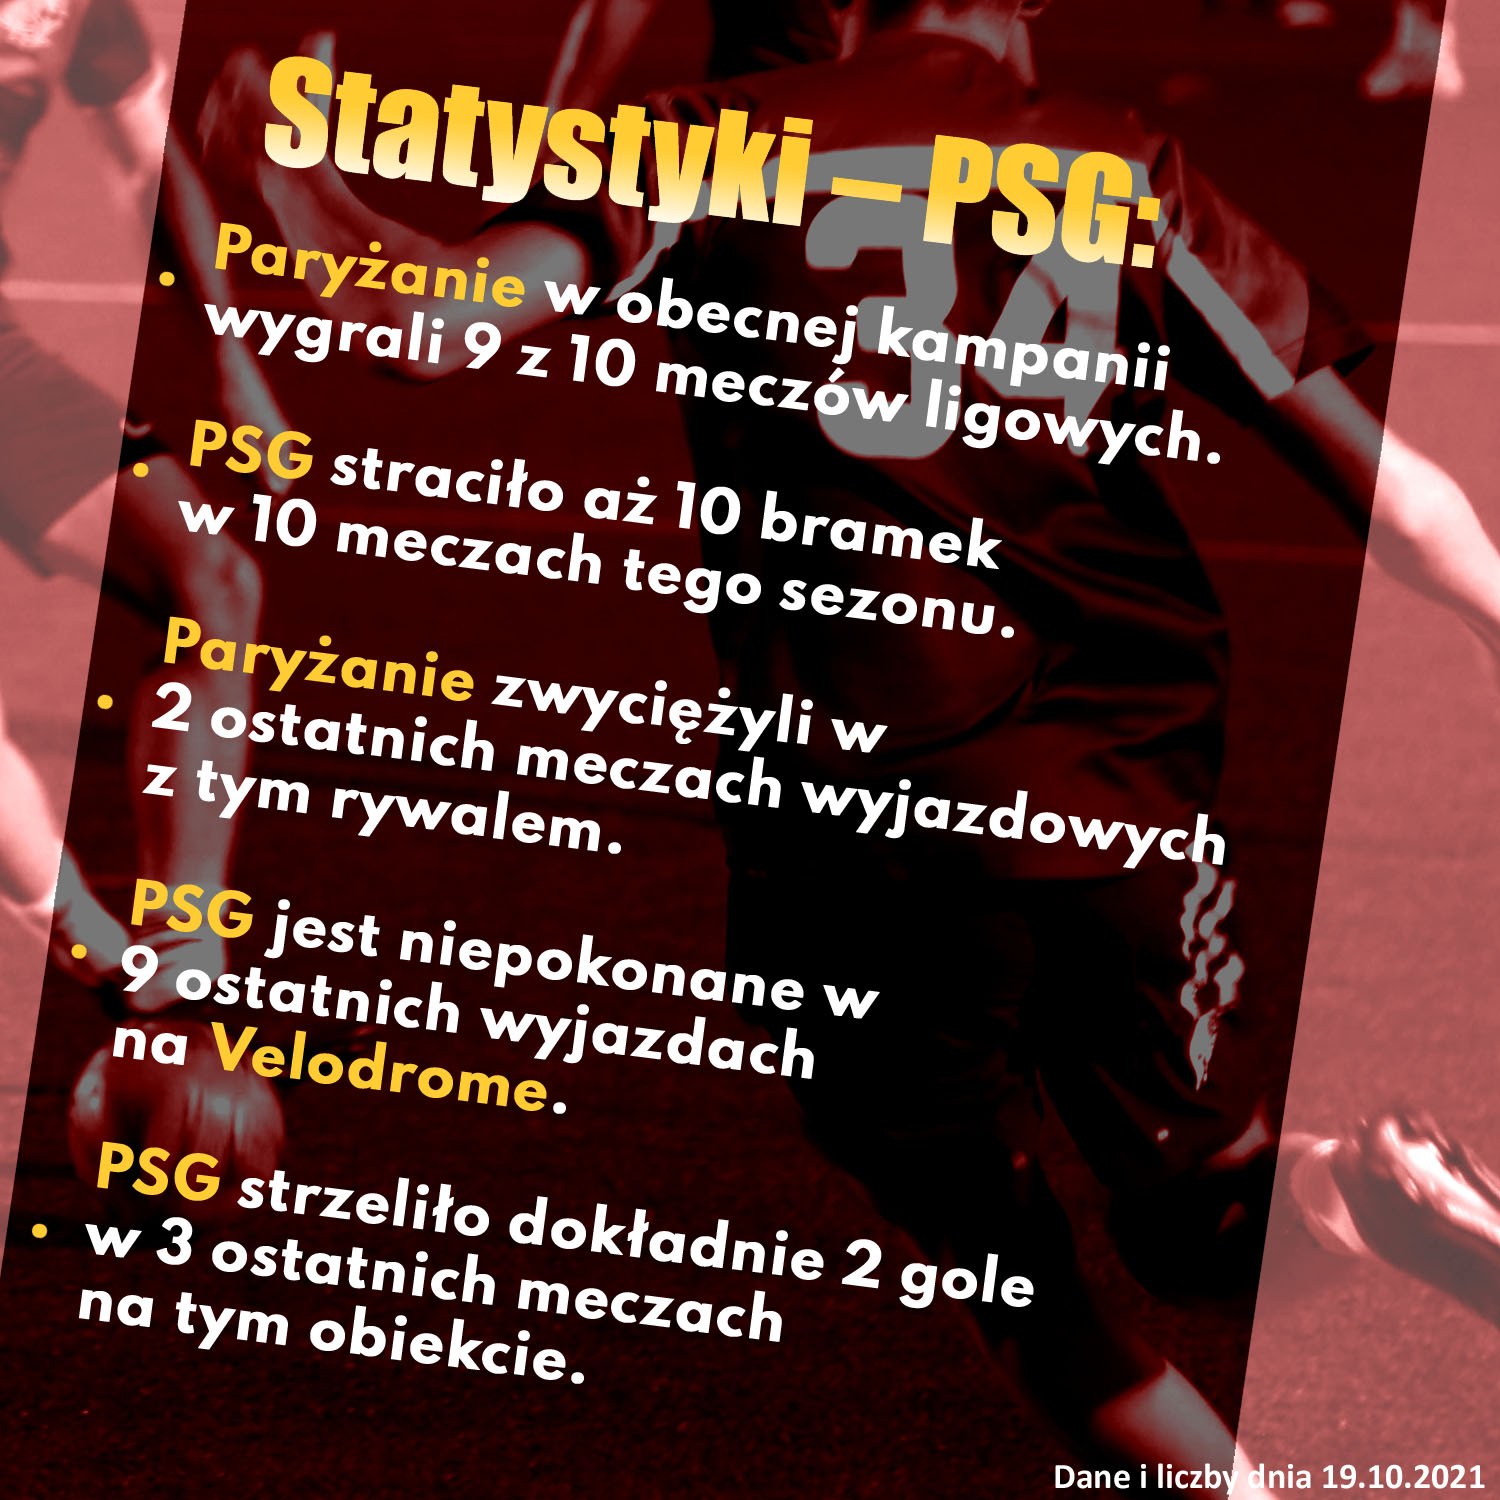 Statystyki PSG